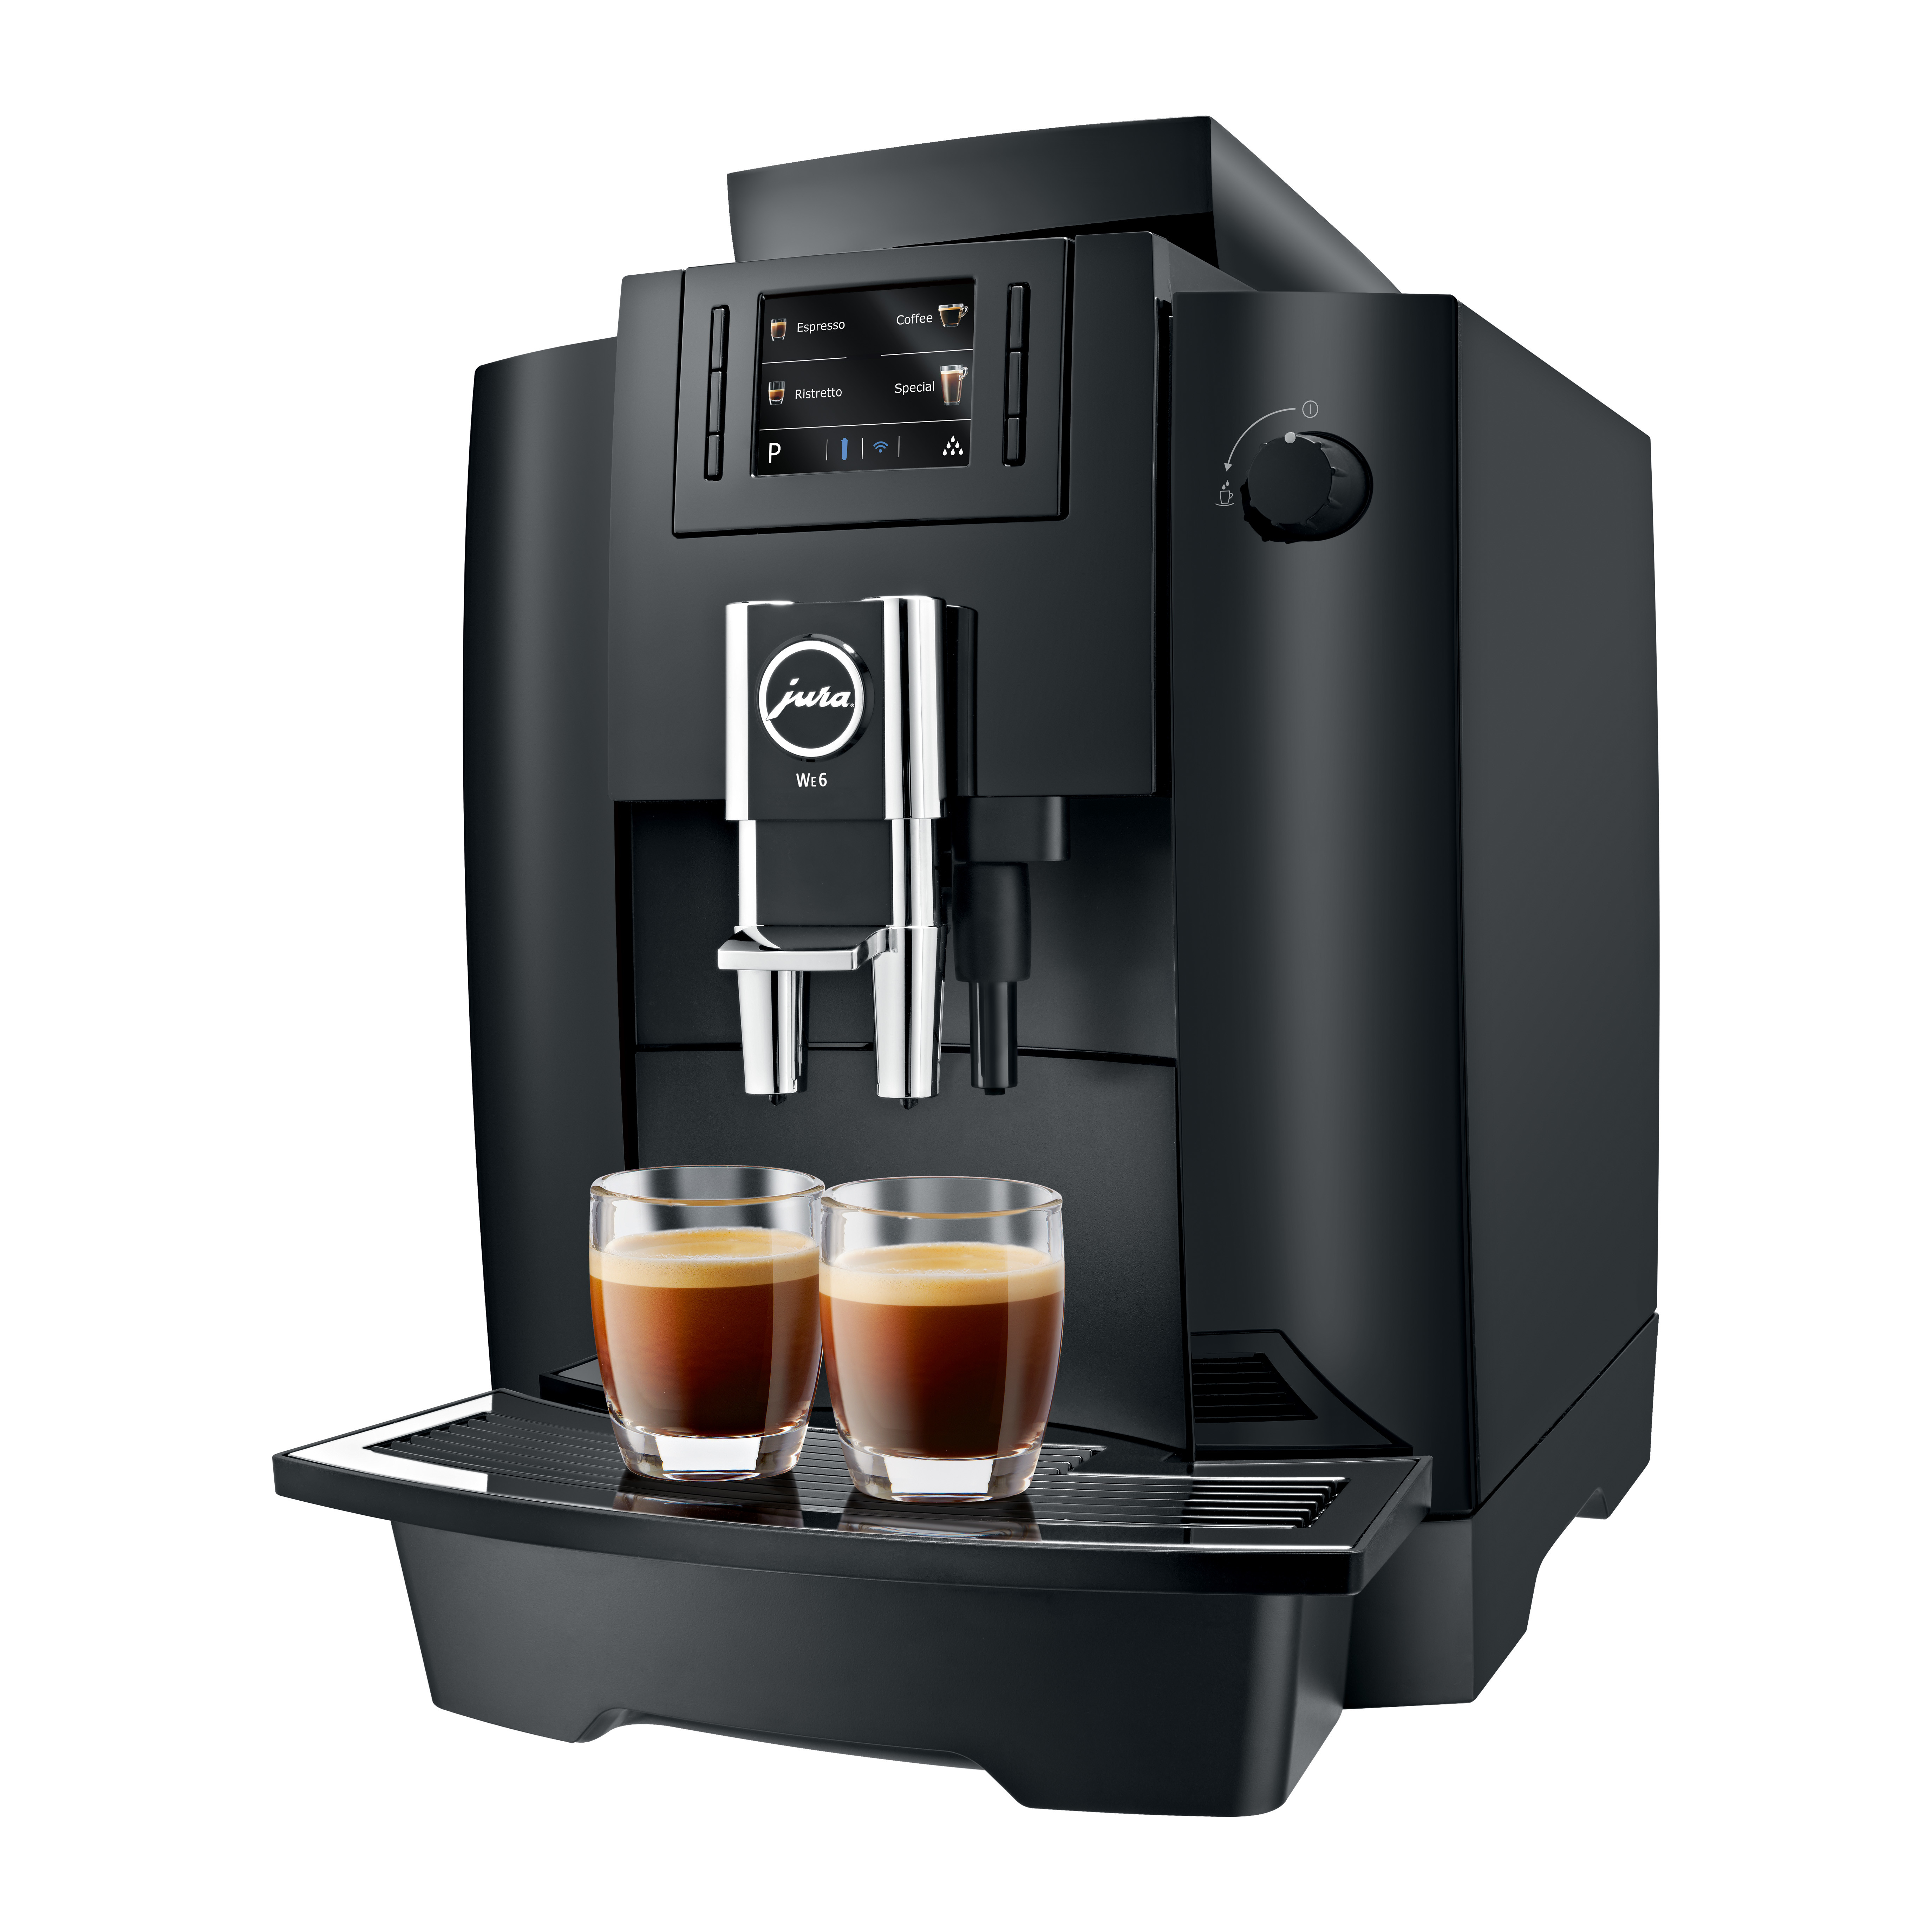 Met de Jura WE6 zet je perfecte espresso en koffie op kantoor